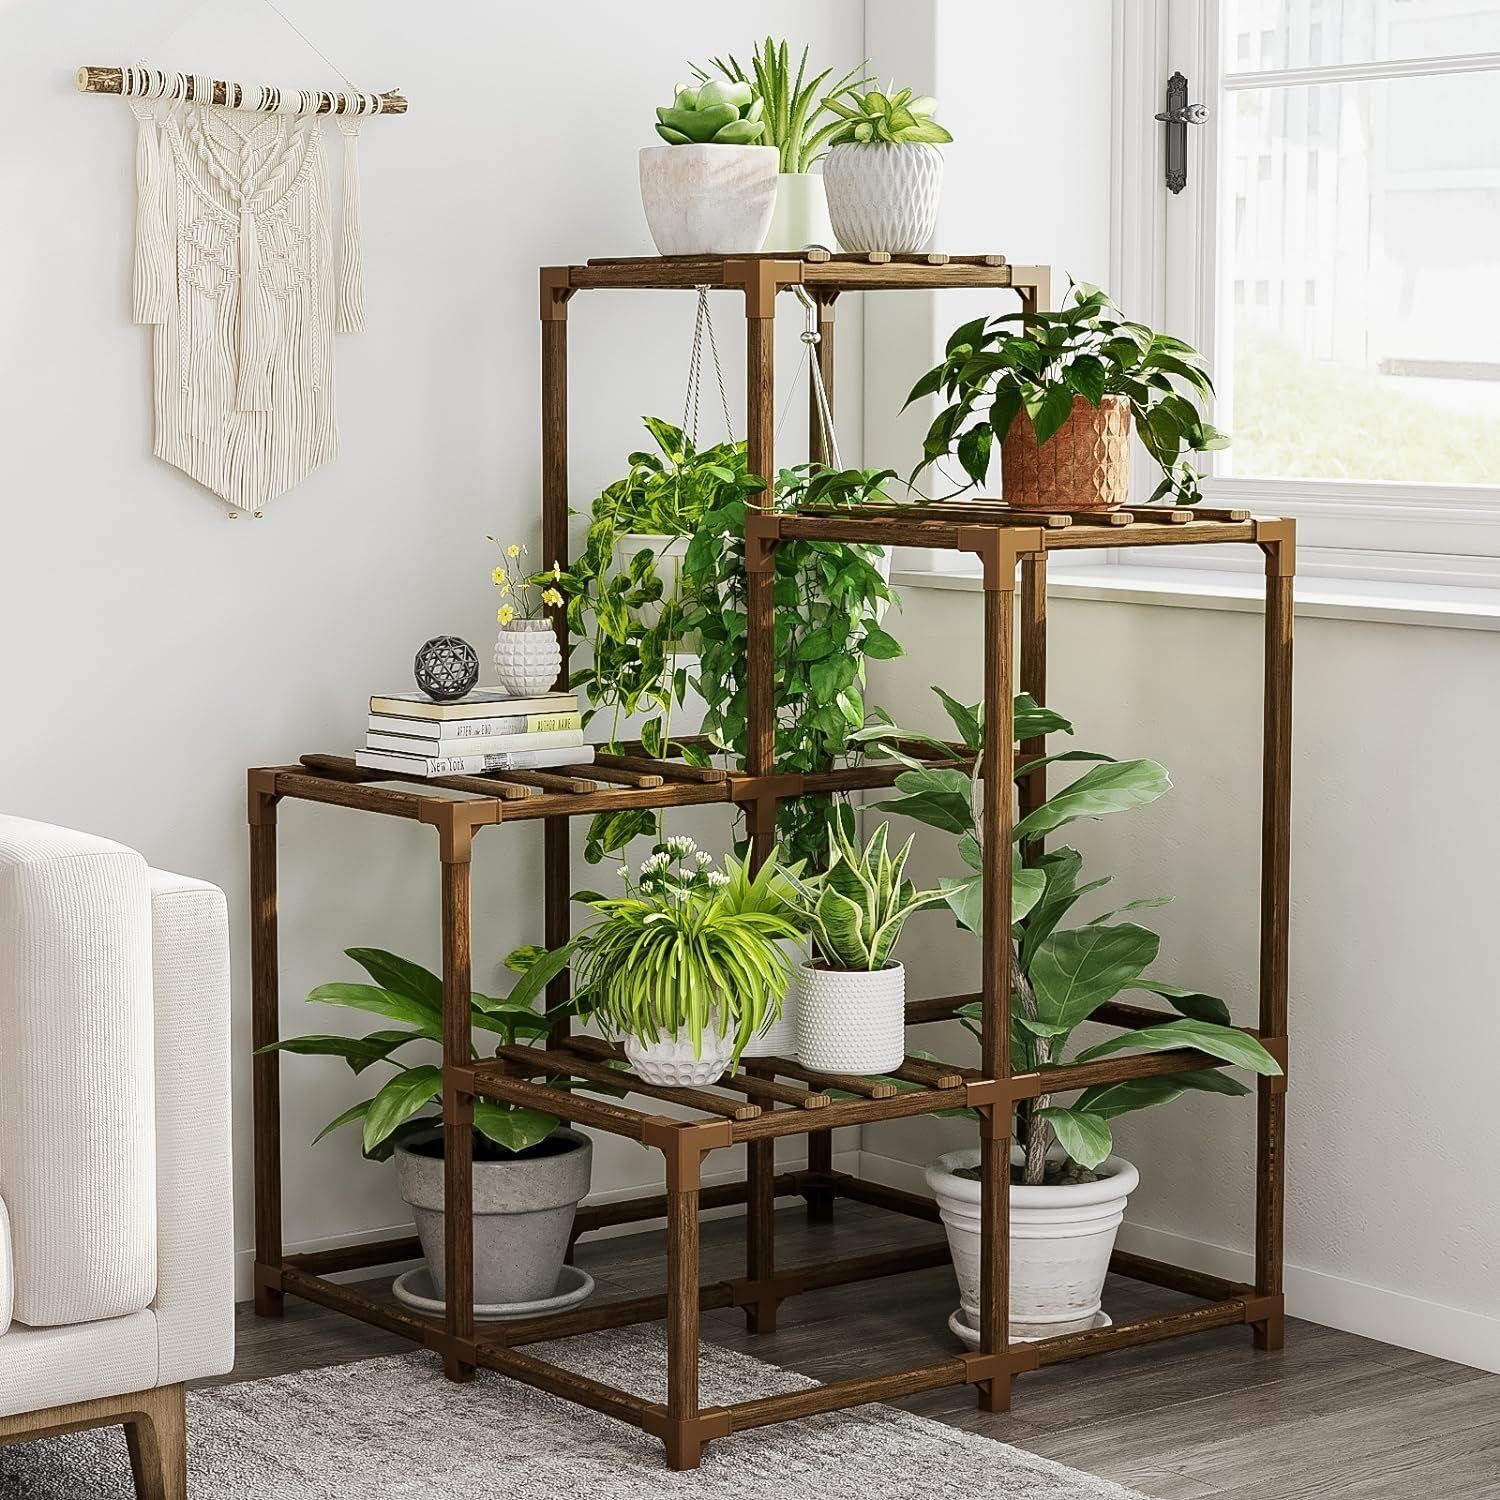 $53 Plant Stand Indoor Outdoor